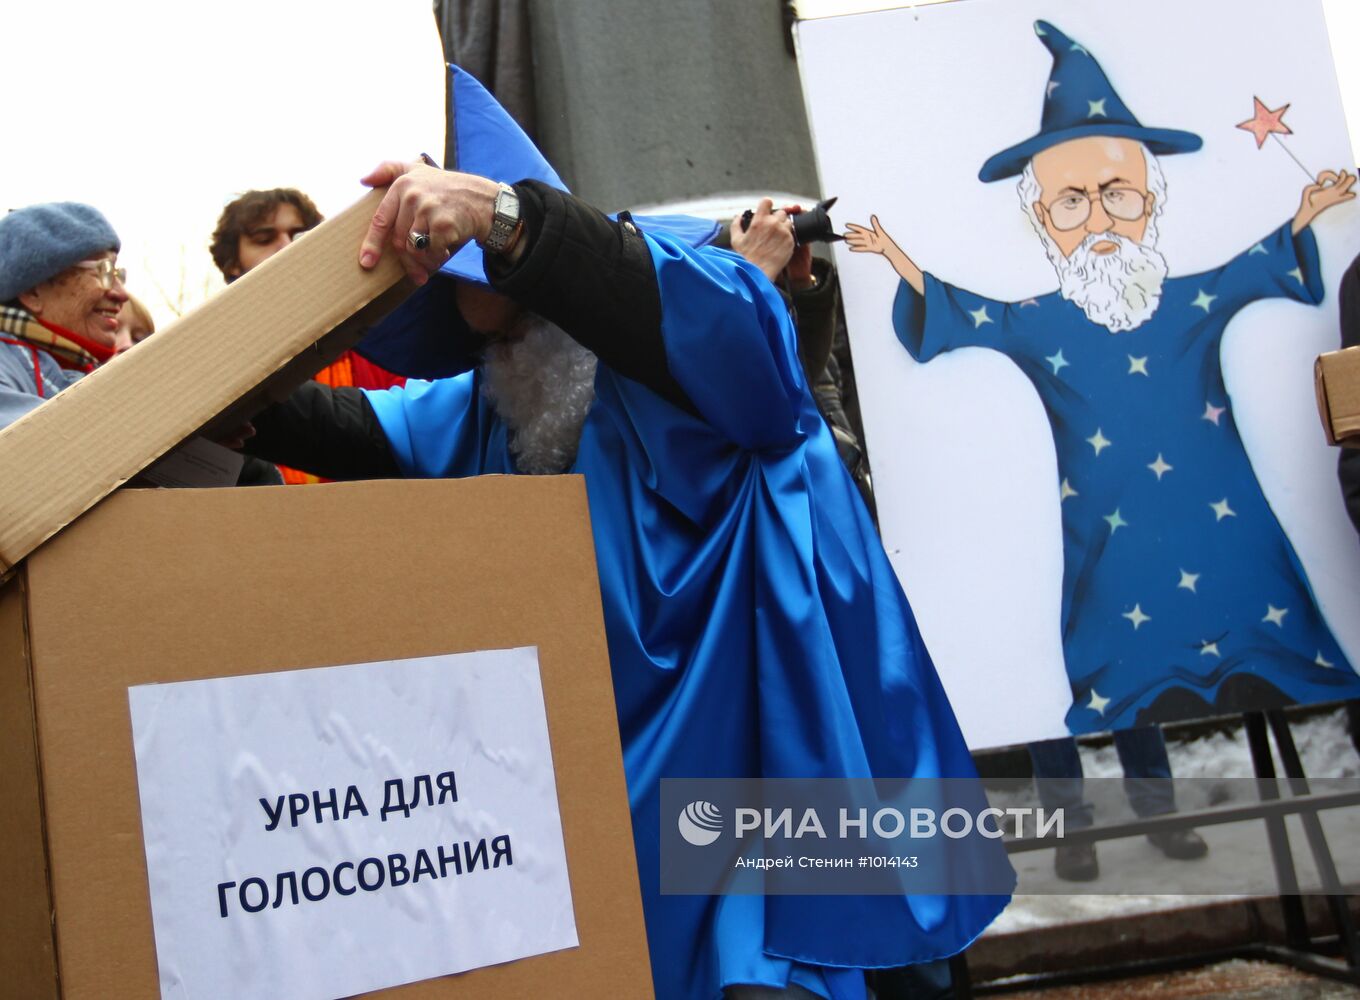 Митинг против фальсификации итогов выборов в Госдуму